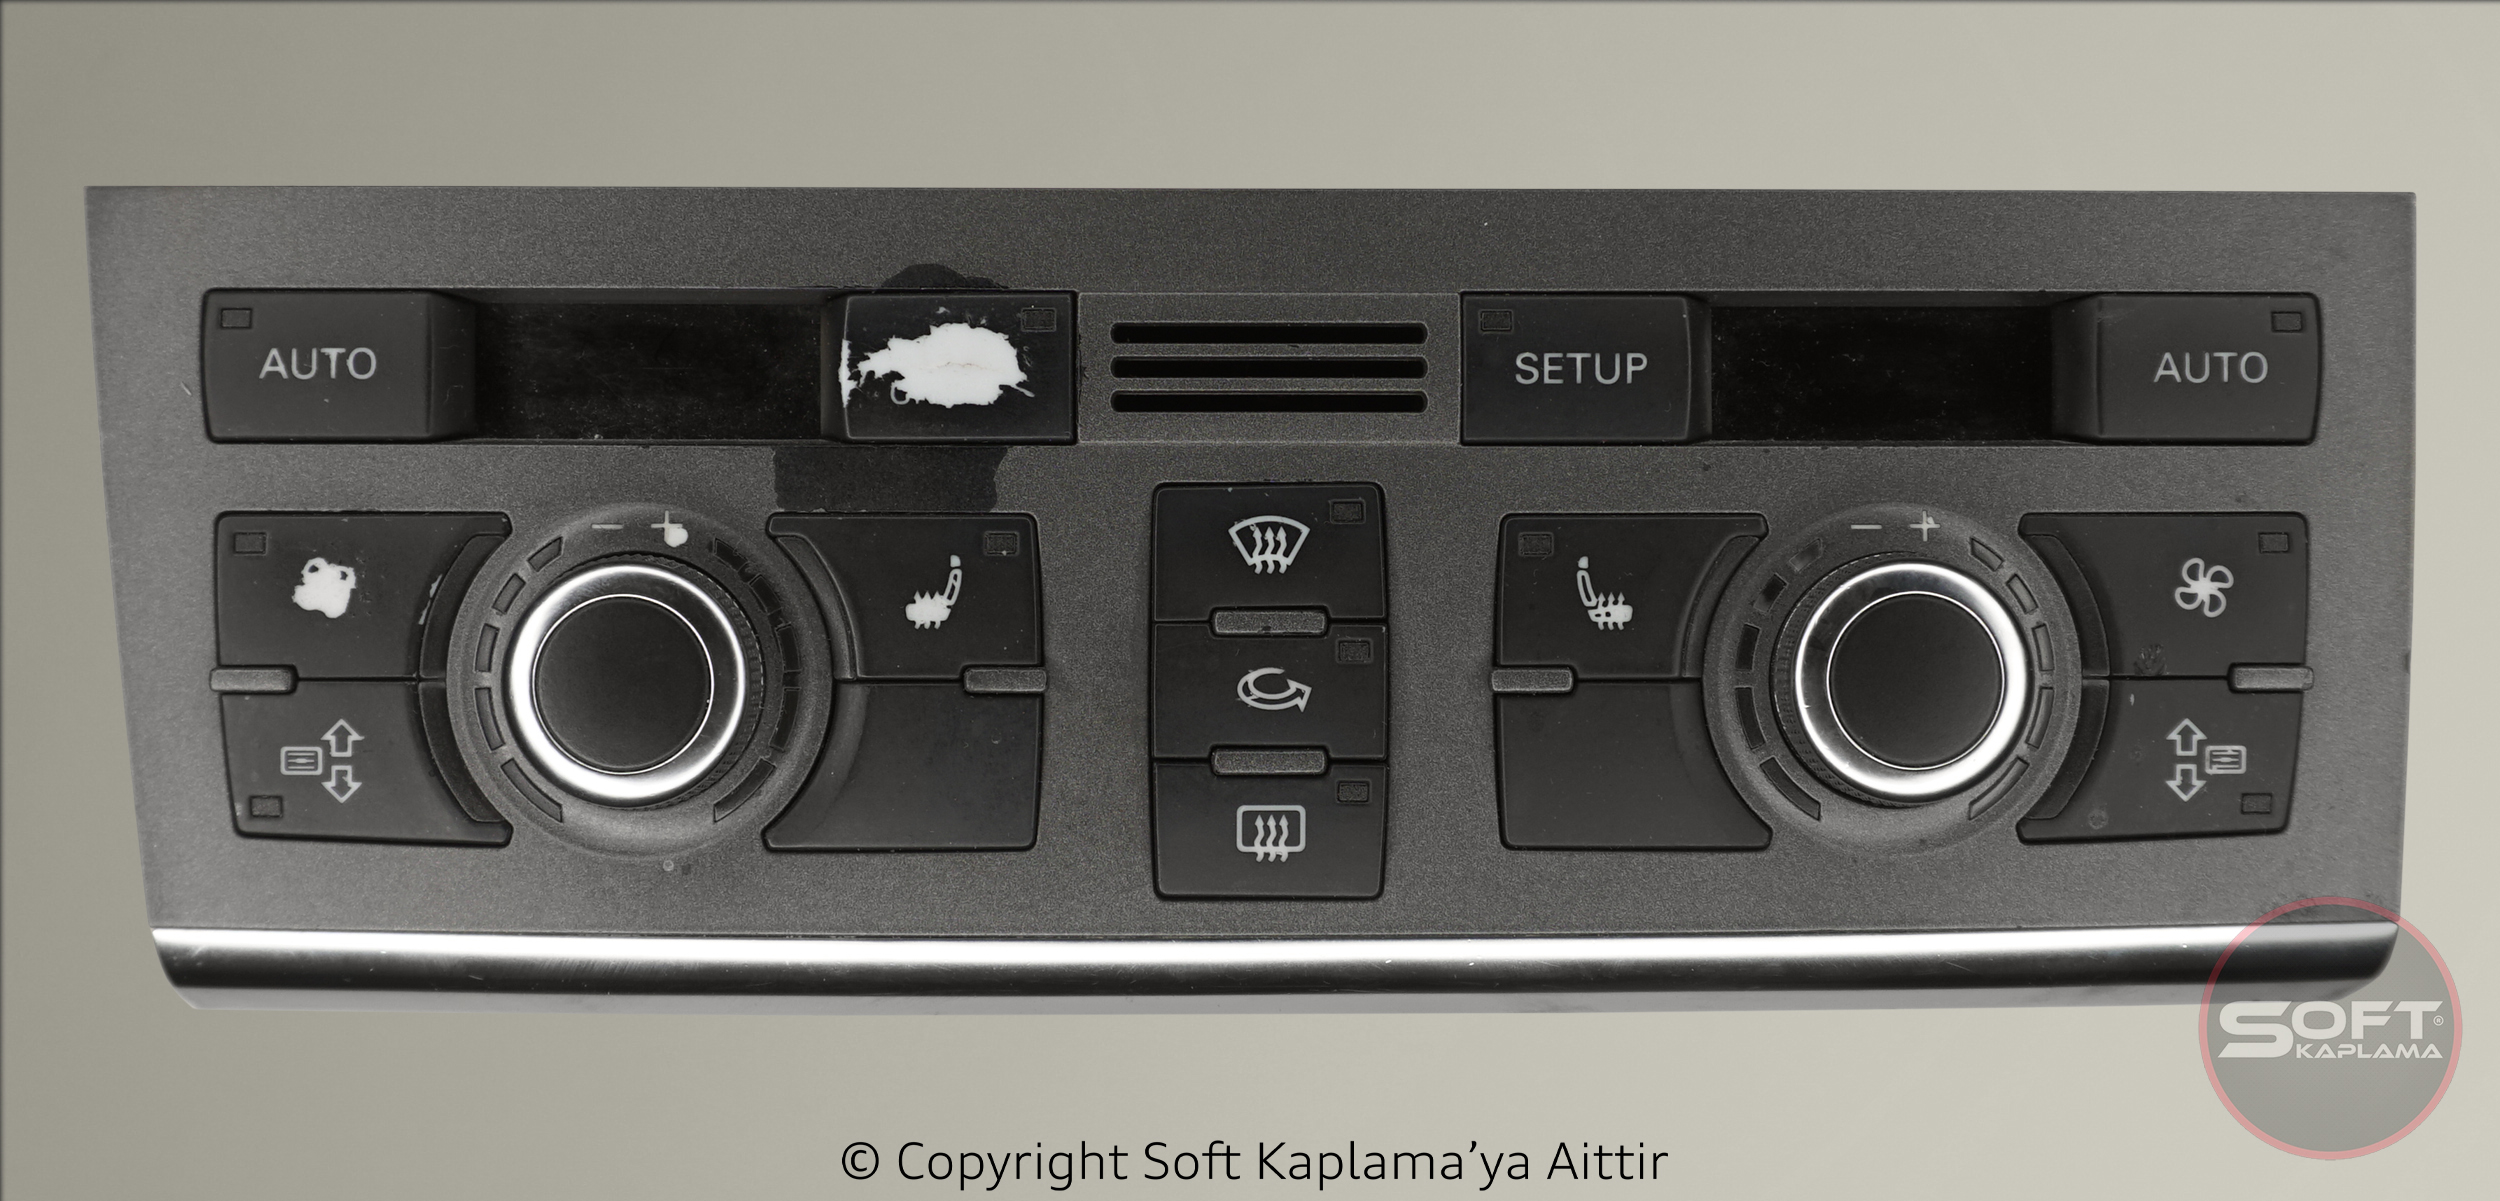 Audi-klima-paneli-silik-tus-trim-yenileme-deformasyon-boyama-soft-kaplama-restorasyon-once.jpg